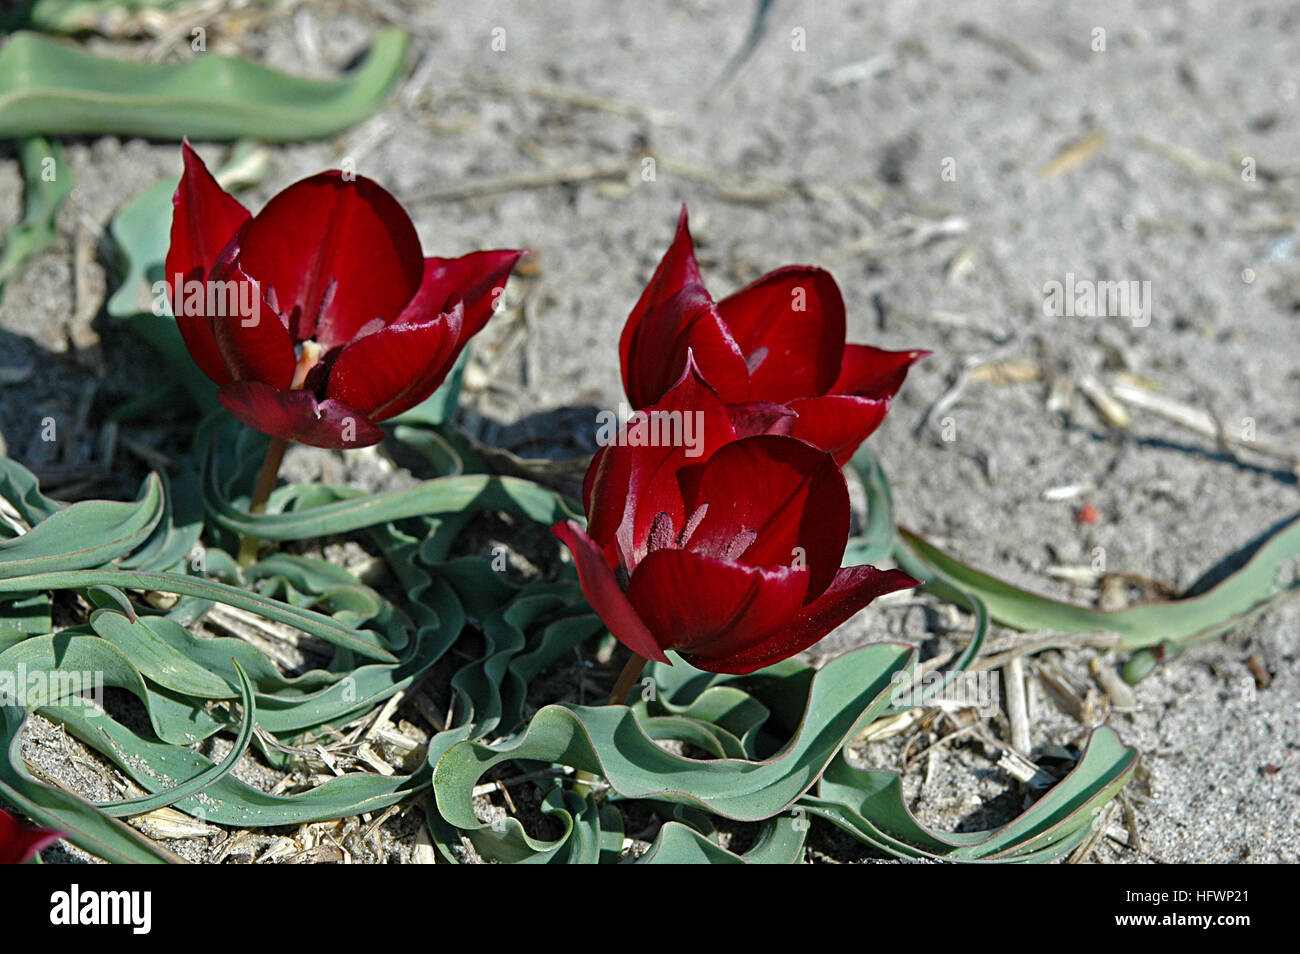 TÌNH YÊU CÂY CỎ ĐV 10  - Page 7 Tulipa-ulophylla-a-rare-seen-tulipa-species-HFWP21